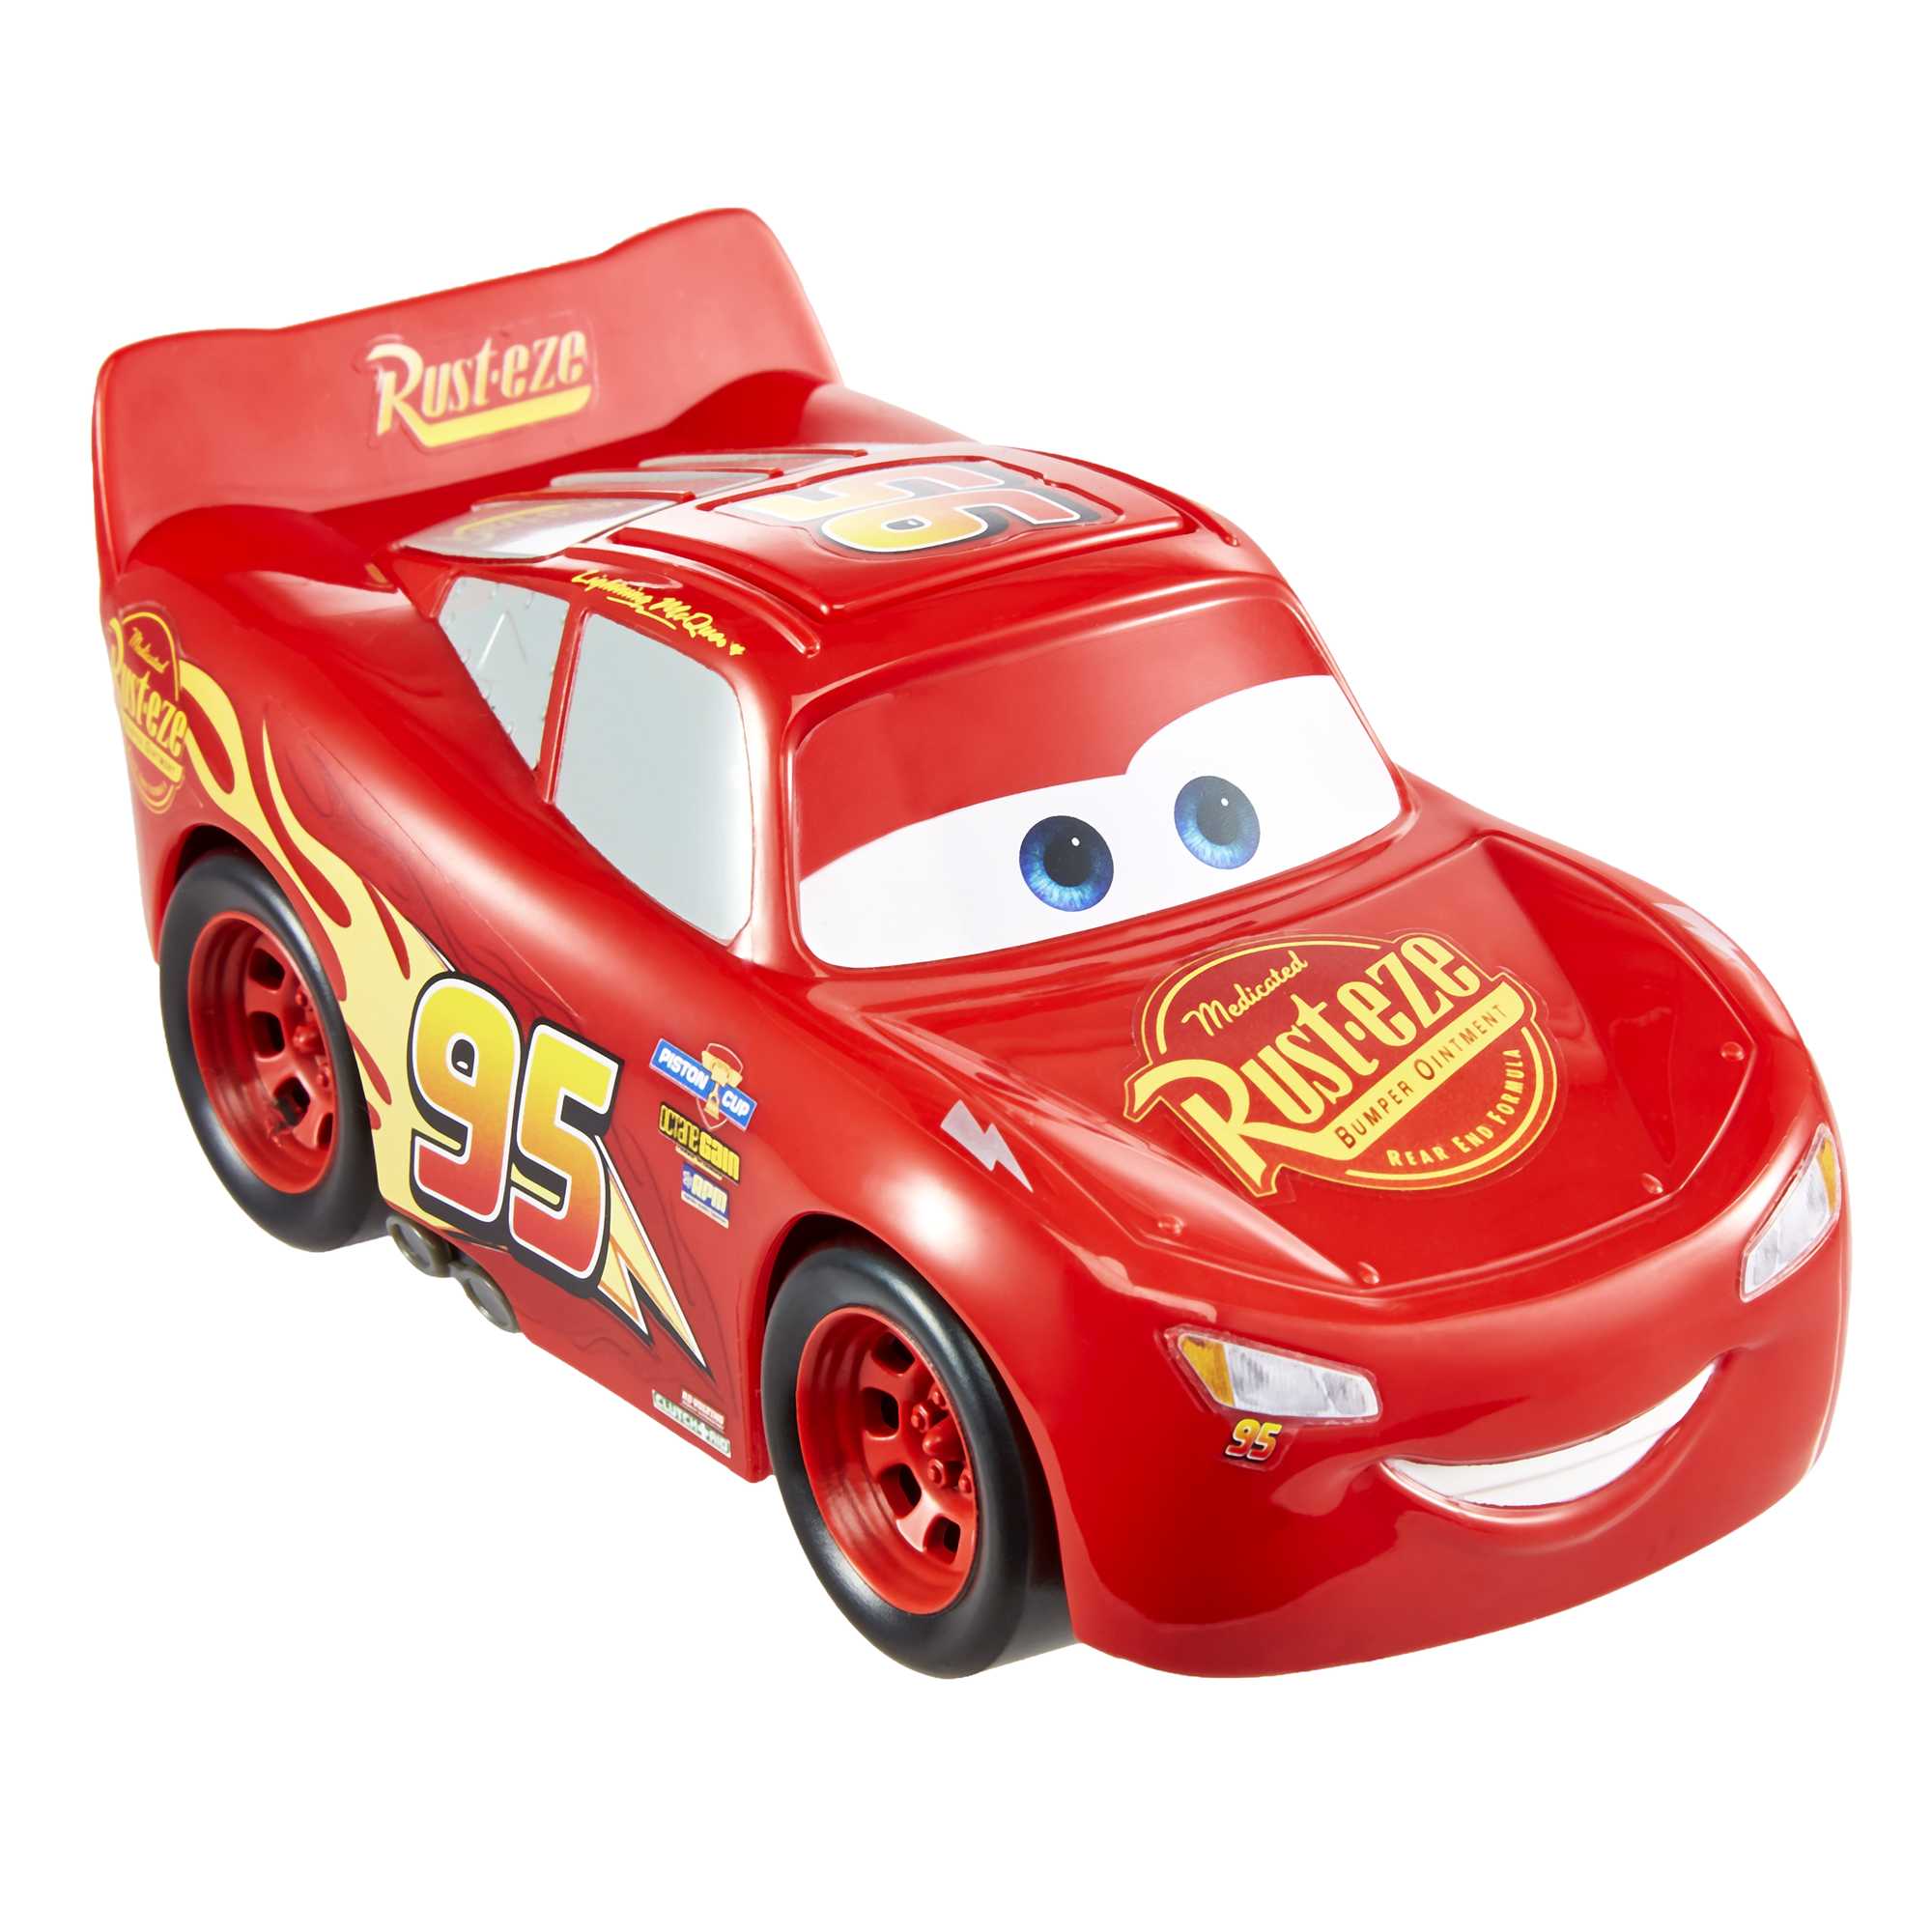 Véhicule Sonore Cars Mattel : King Jouet, Les autres véhicules